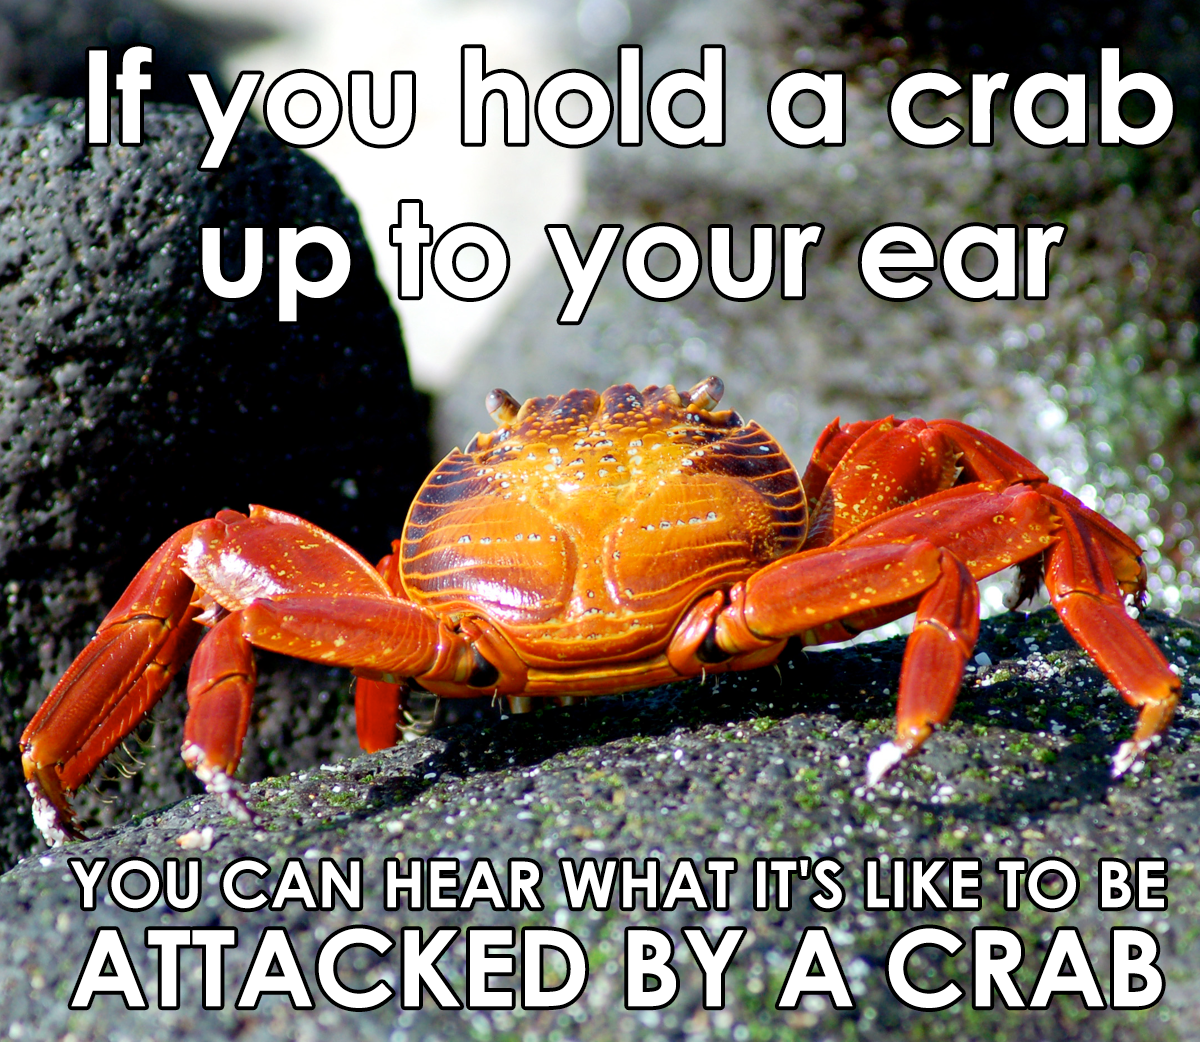 It sounds like crabp